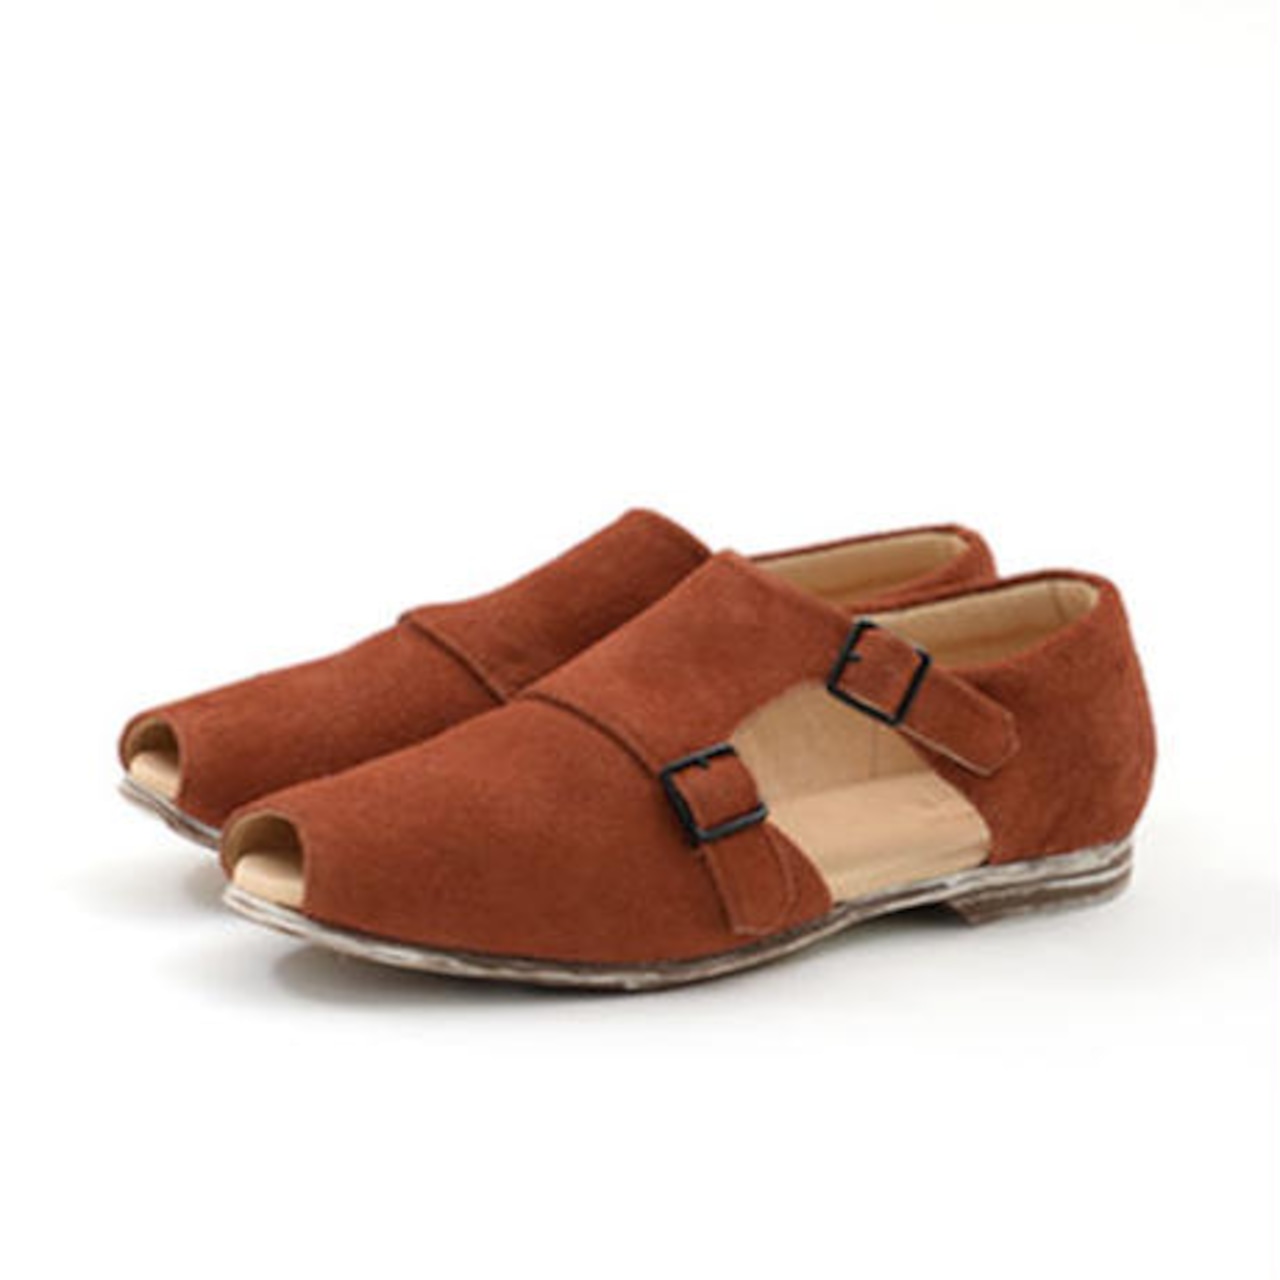 【 UNIONINI 】double monk strap shoes  brick brown   22.5-24cm